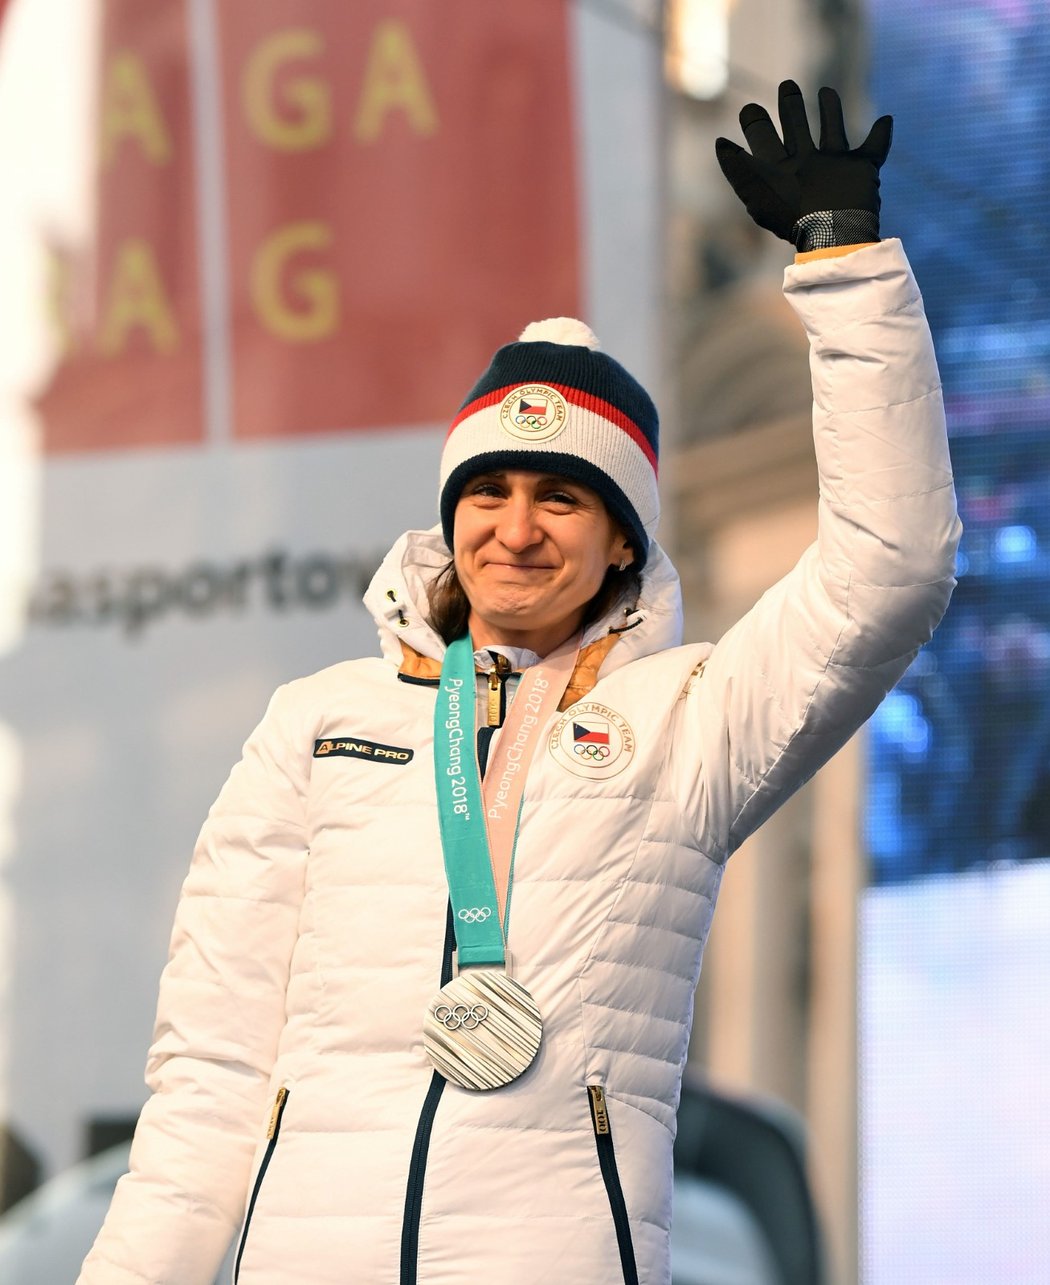 Stříbrná medailistka Martina Sáblíková mává fanouškům na Staroměstském náměstí